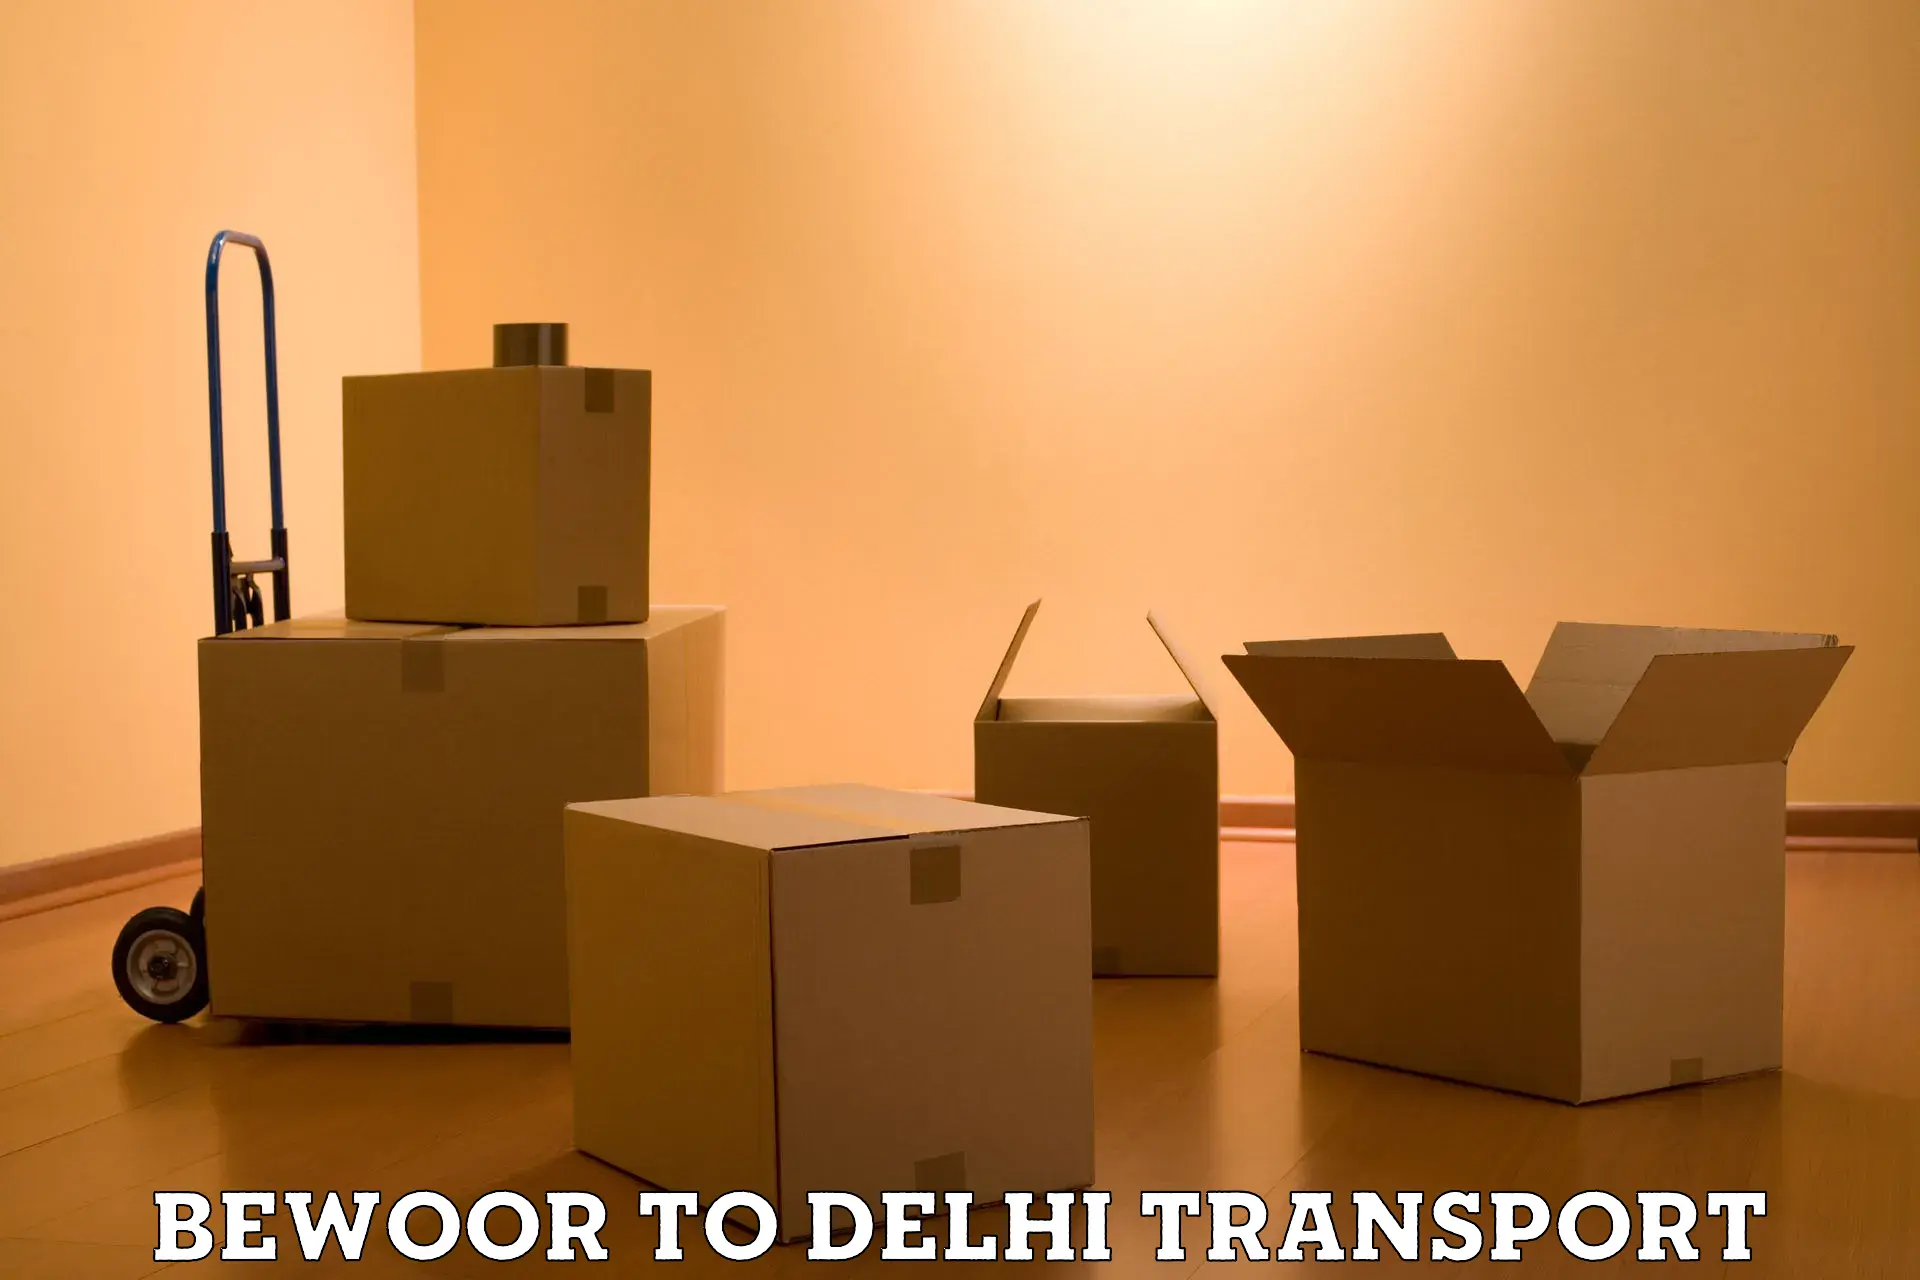 Online transport service Bewoor to IIT Delhi